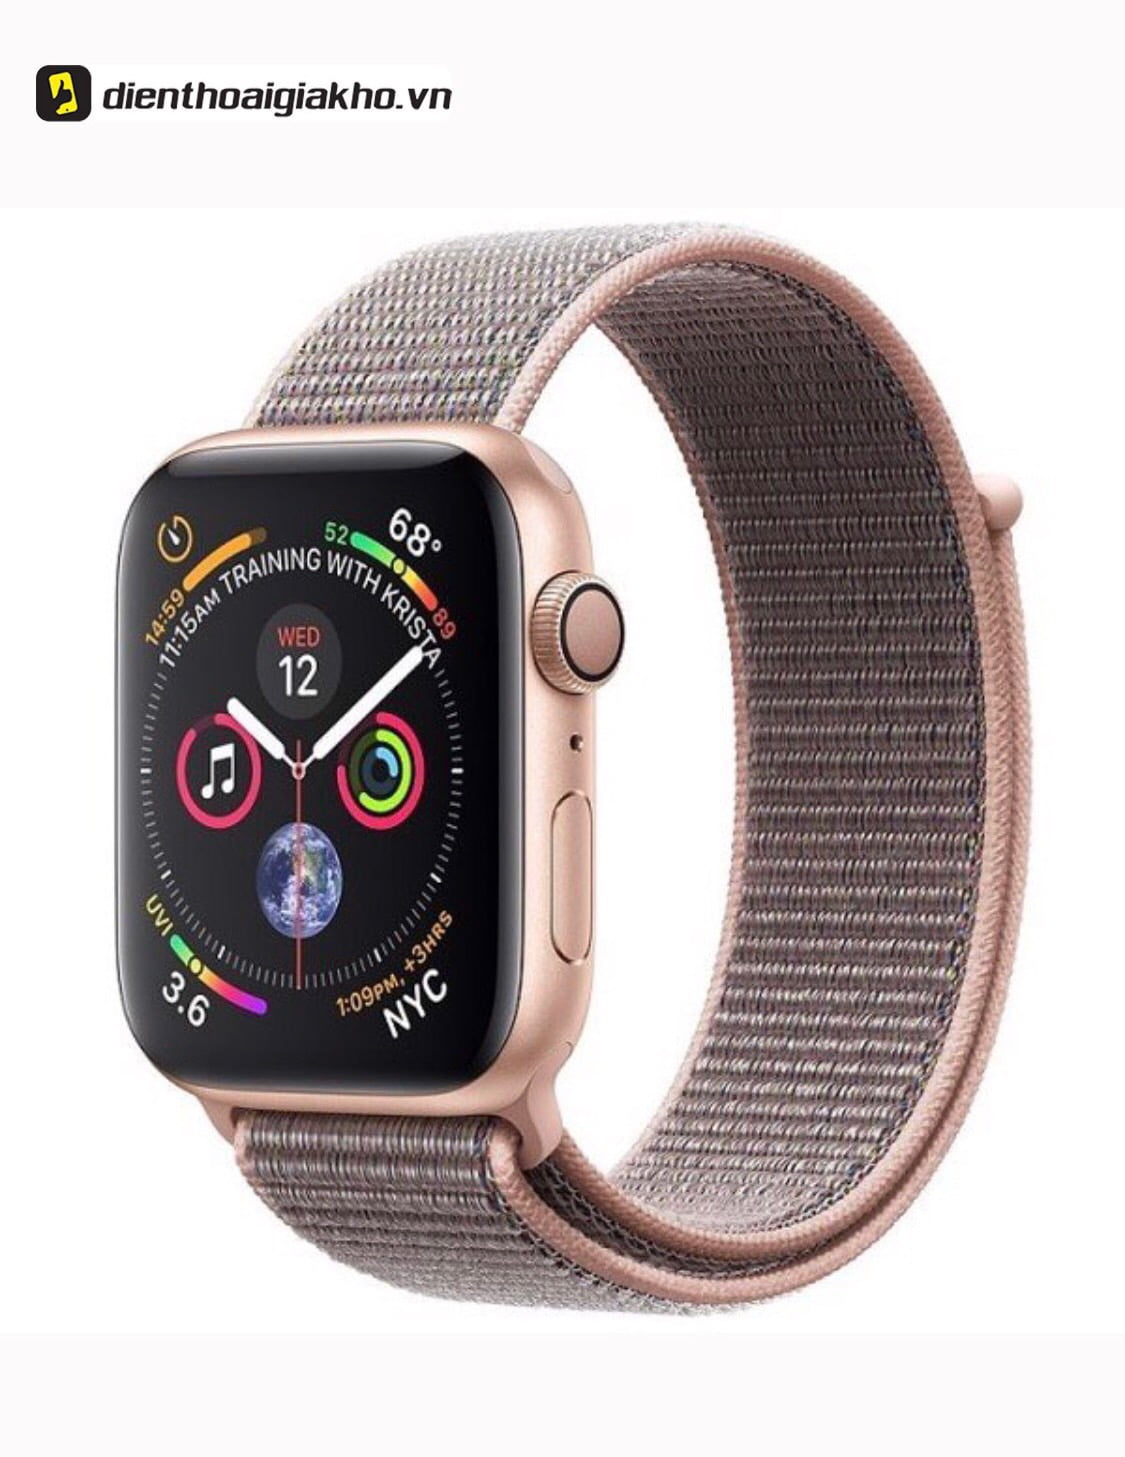 Một chiếc Apple Watch tiêu chuẩn vừa thời thượng vừa chuyên nghiệp đúng không nào?